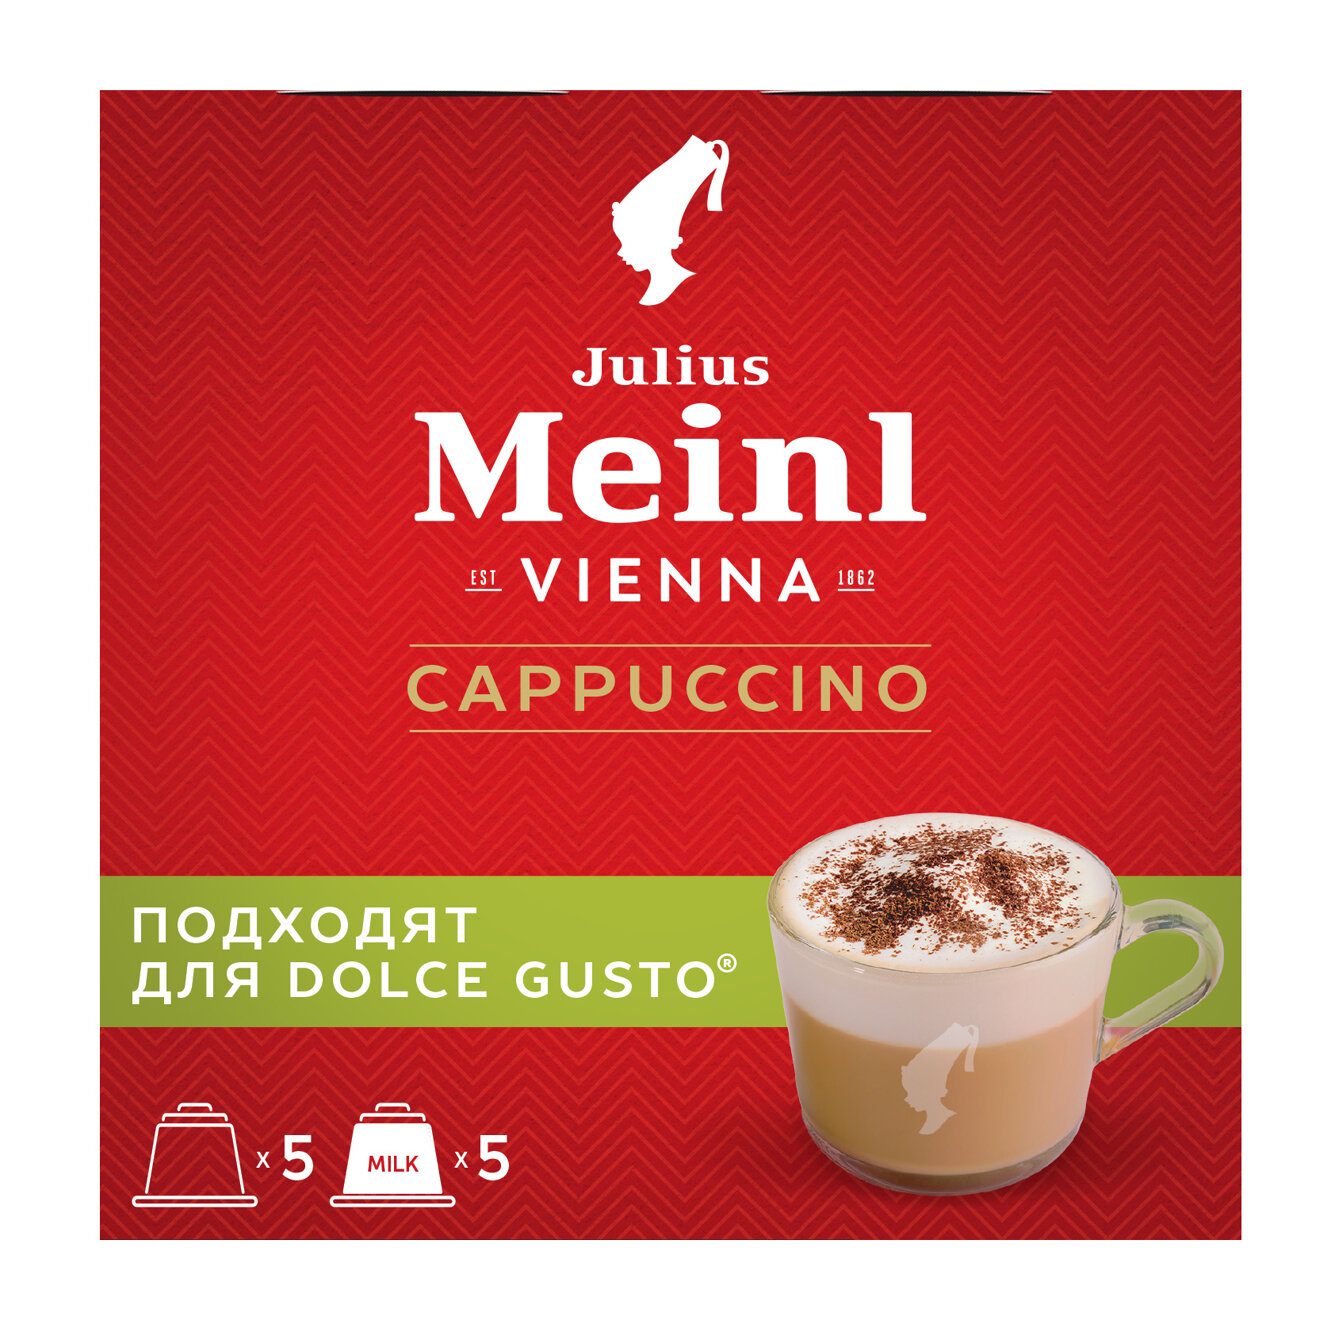 Кофе в капсулах Julius Meinl Капучино для кофемашин Dolce Gusto (Дольче Густо), 5 порций, 10 капсул